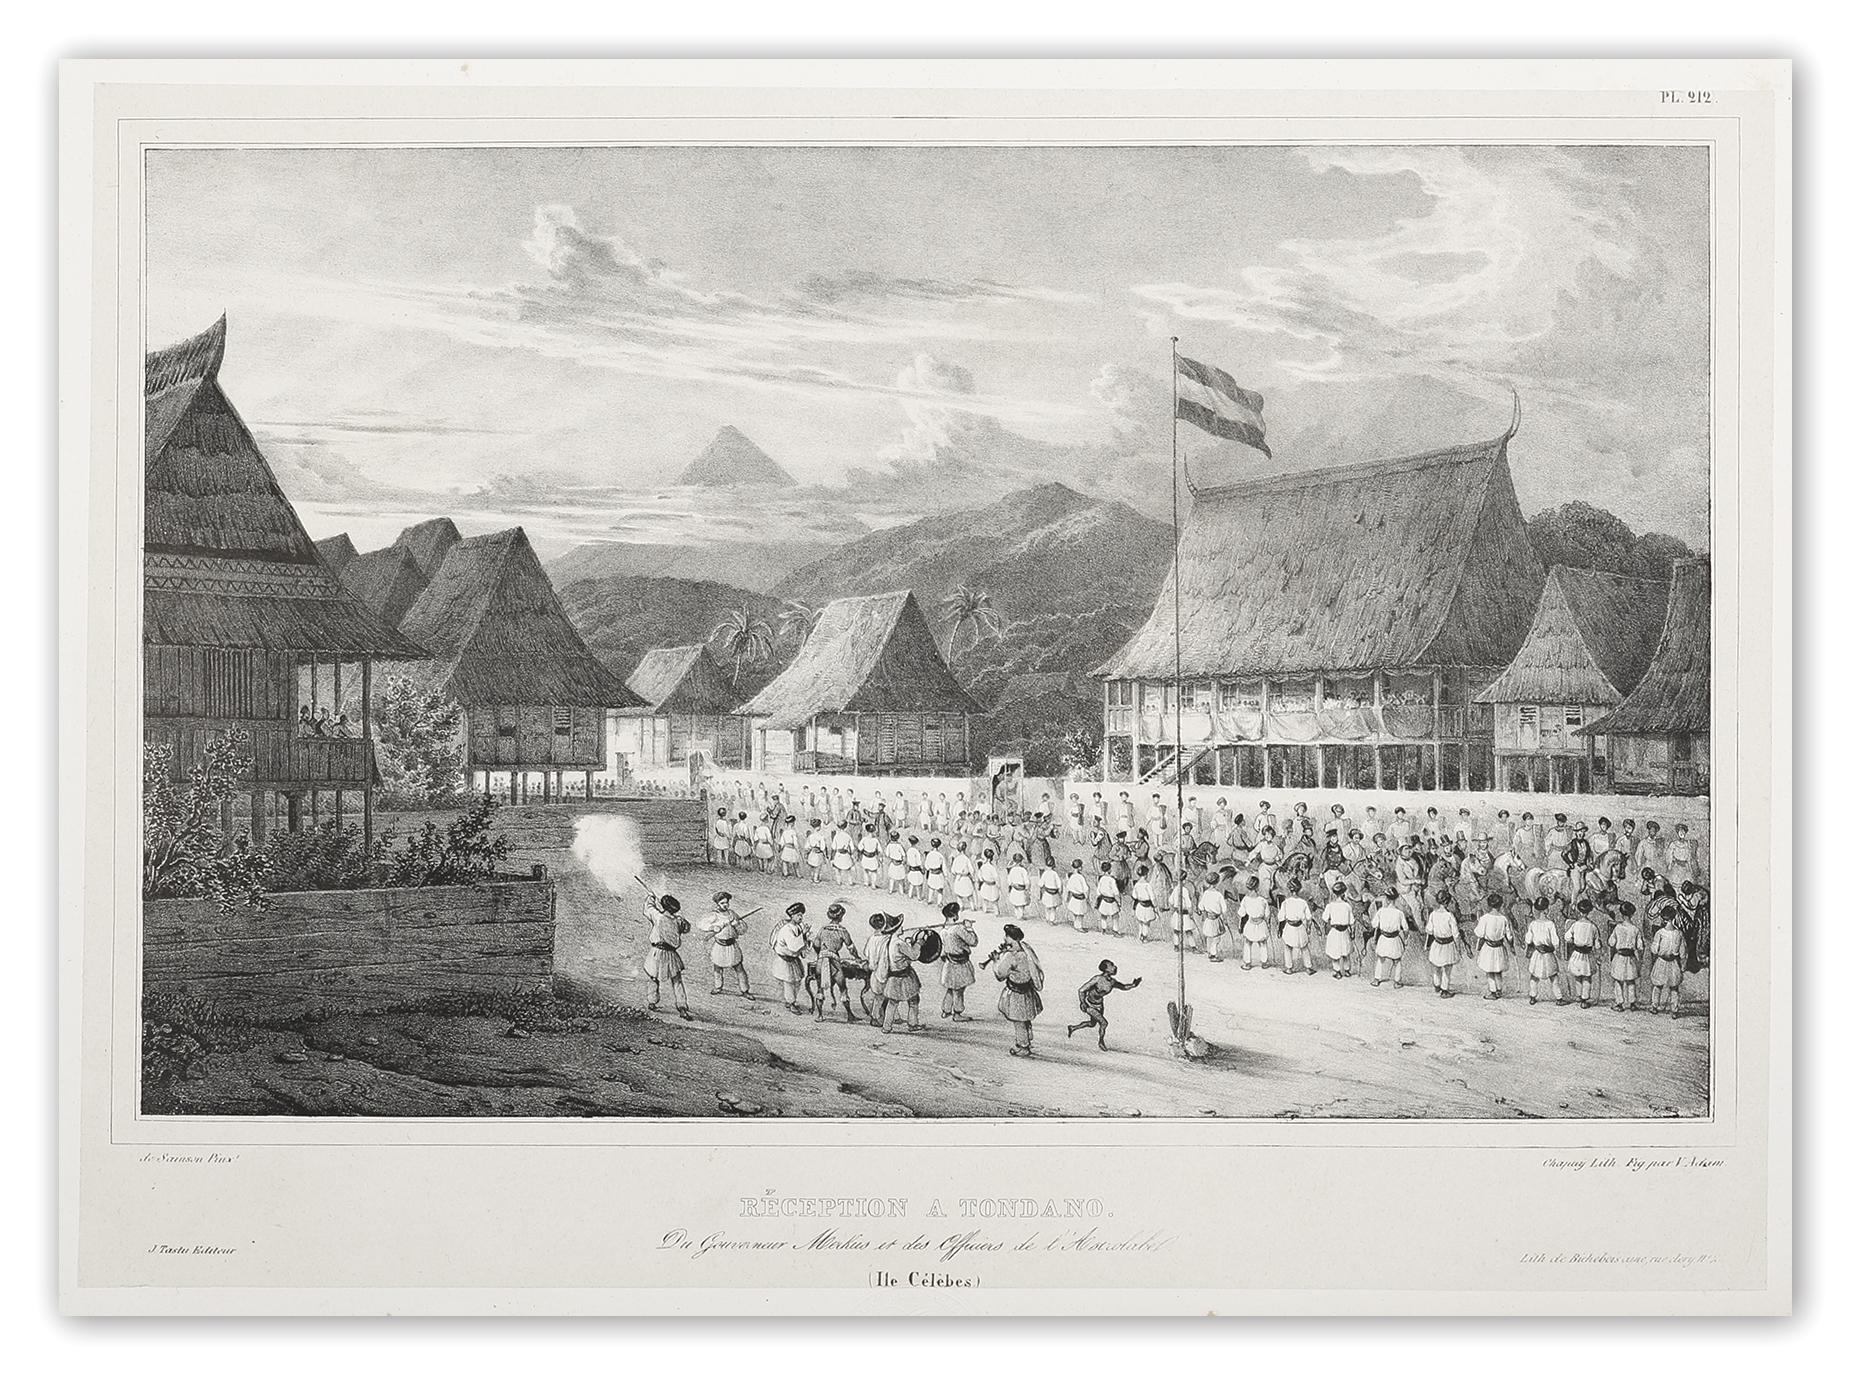 Reception a Tondano. du Gouverneur Merkus et des officiers de l'Astrolabe (Iles Celebes.) - Antique View from 1833